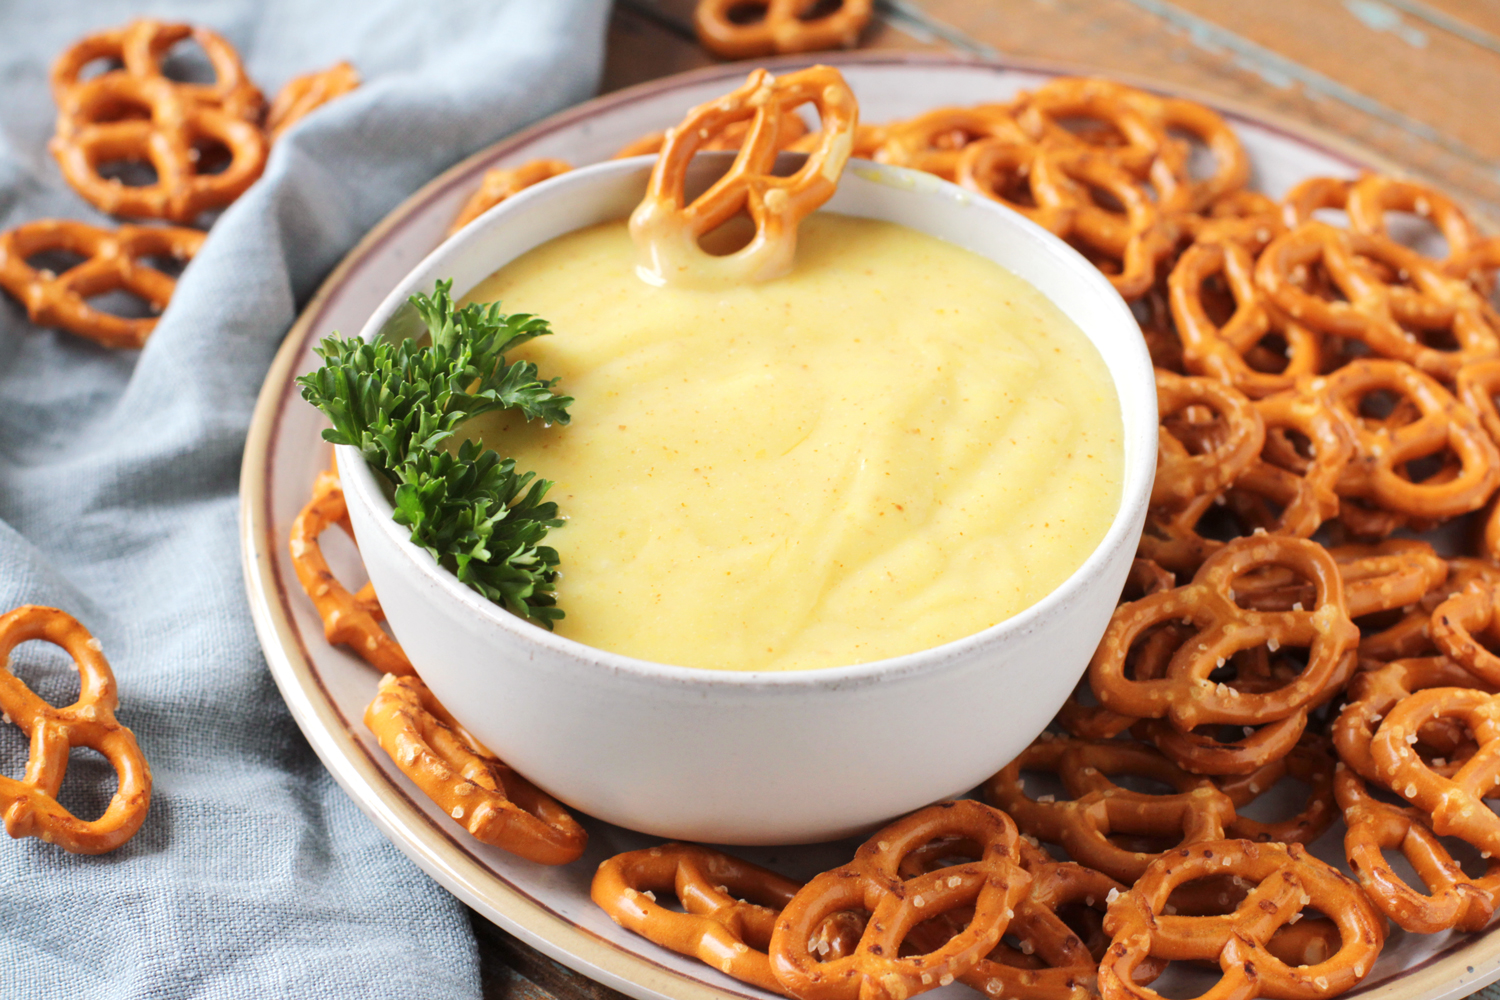 https://deliciousasitlooks.com/wp-content/uploads/2020/11/low-fodmap-mustard-pretzel-dip-7074.jpg